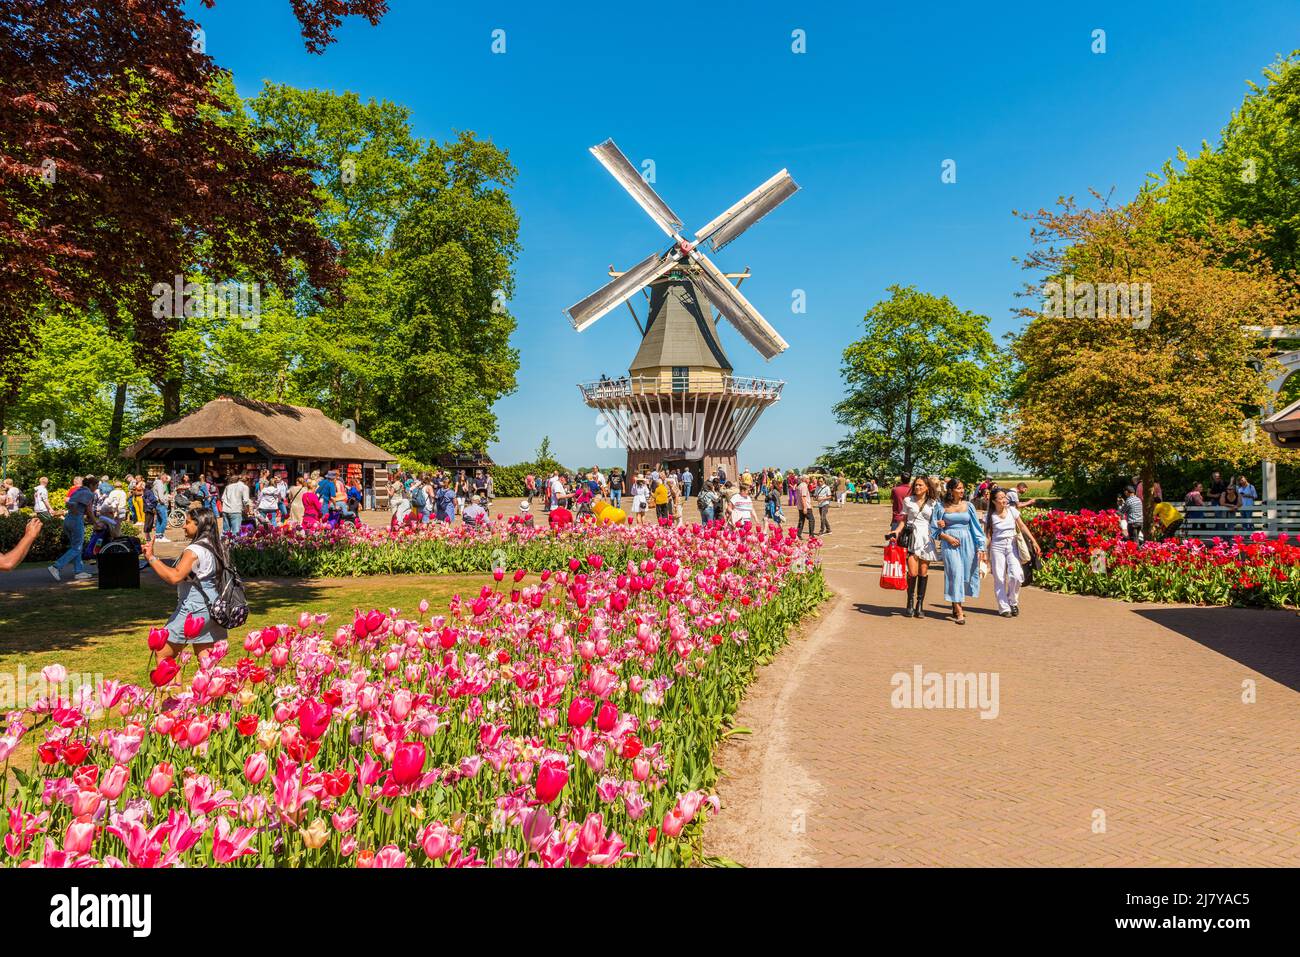 Mulino a vento presso il complesso dei Giardini Keukenhof a Lisse, Olanda del Sud, Paesi Bassi. Keukenhof è uno dei più grandi giardini fioriti del mondo. Foto Stock